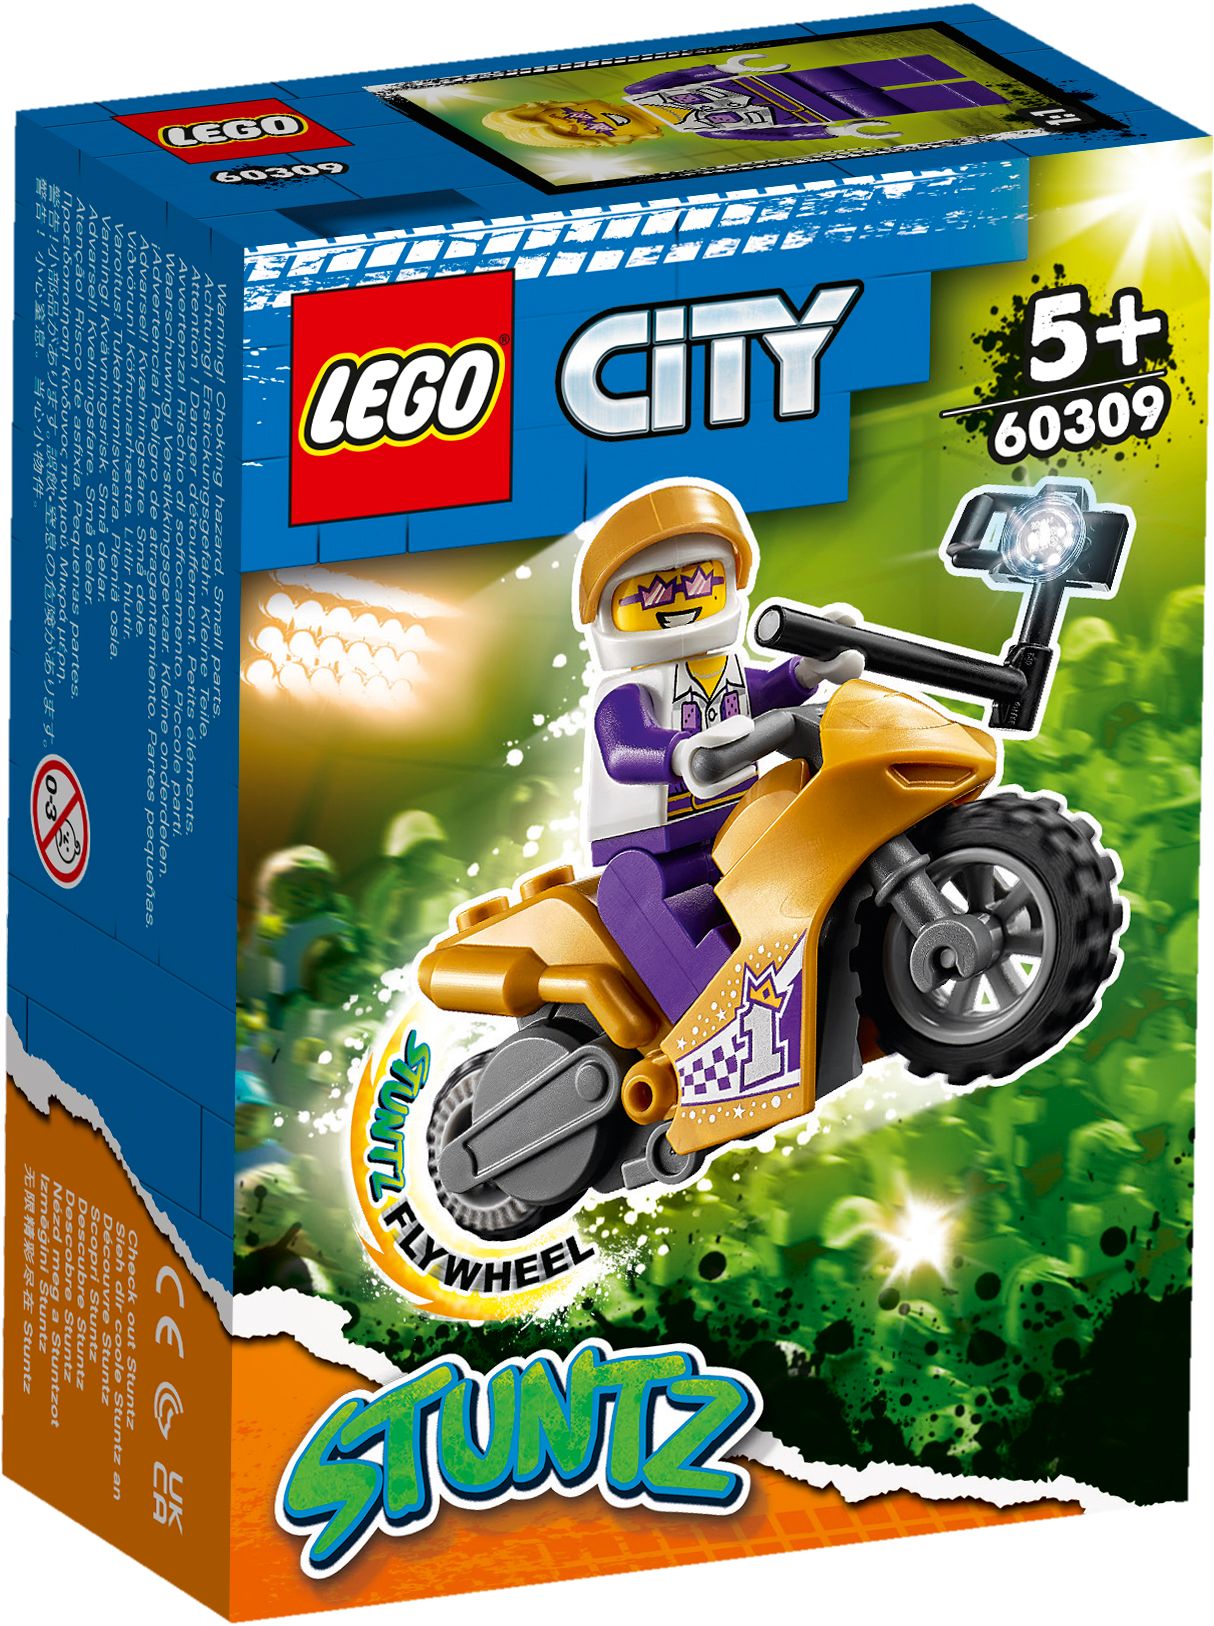 LEGO City 60309 Selfie-Stuntbike LEGO_60309_Box1_v29.jpg